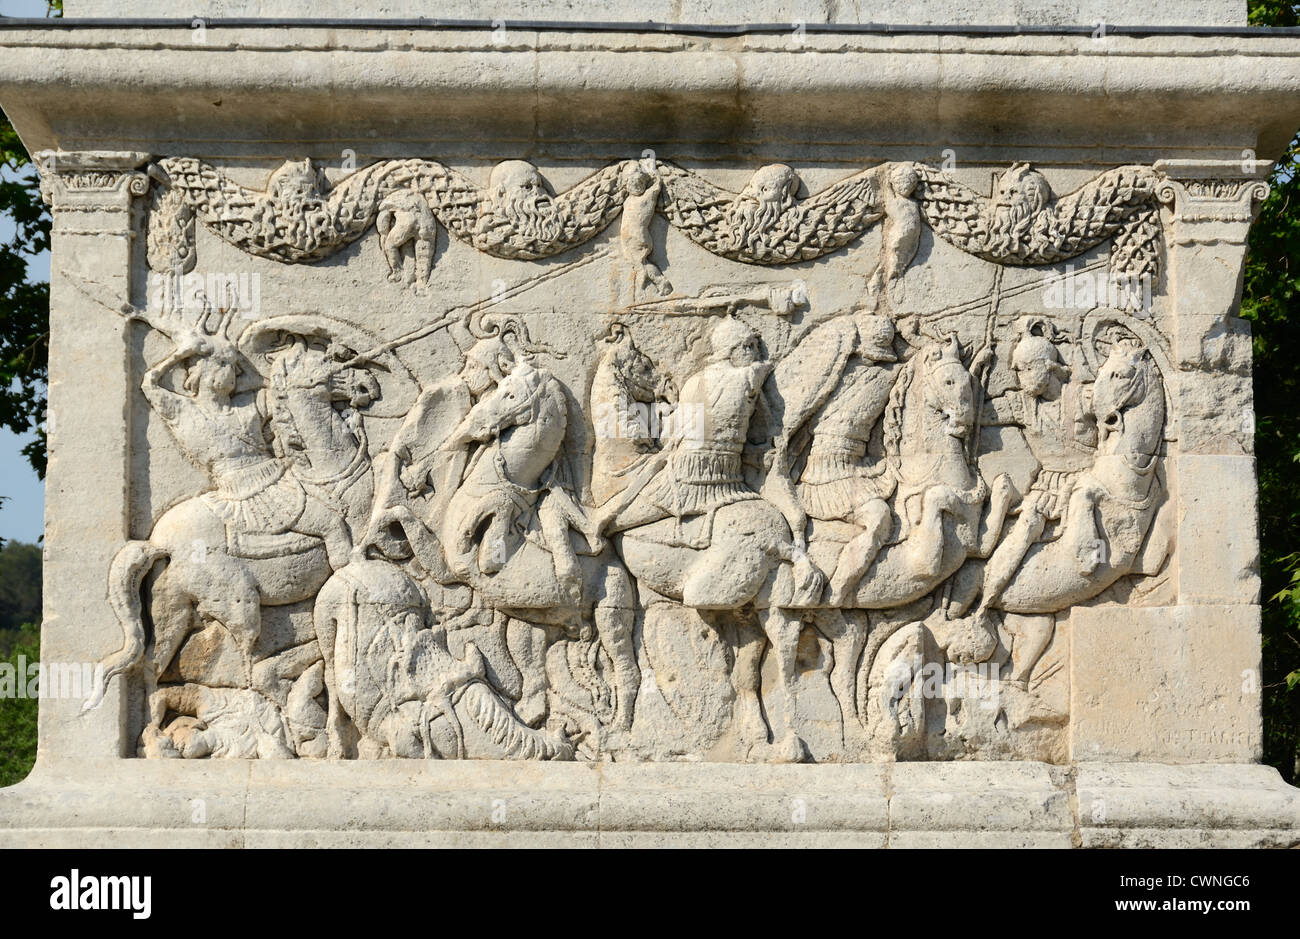 Bassorilievi di soldati romani o di esercito romano combattimenti in scena di battaglia sul Mausoleo del Julii (c40BC) Glanum Saint-Rémy-de-Provence Francia Foto Stock